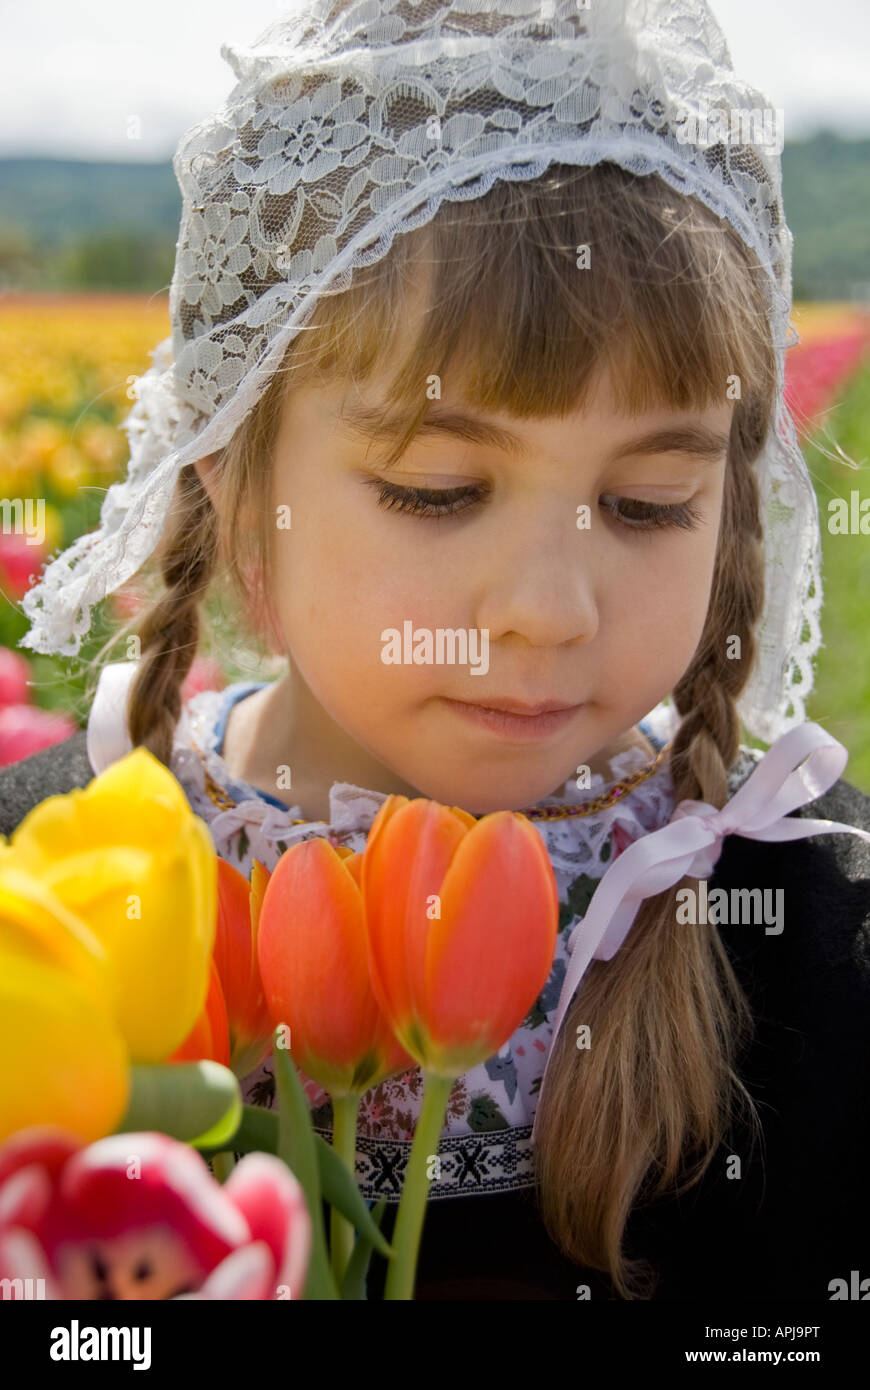 Giovane ragazza che indossa un cappello olandese tenendo i tulipani Foto Stock